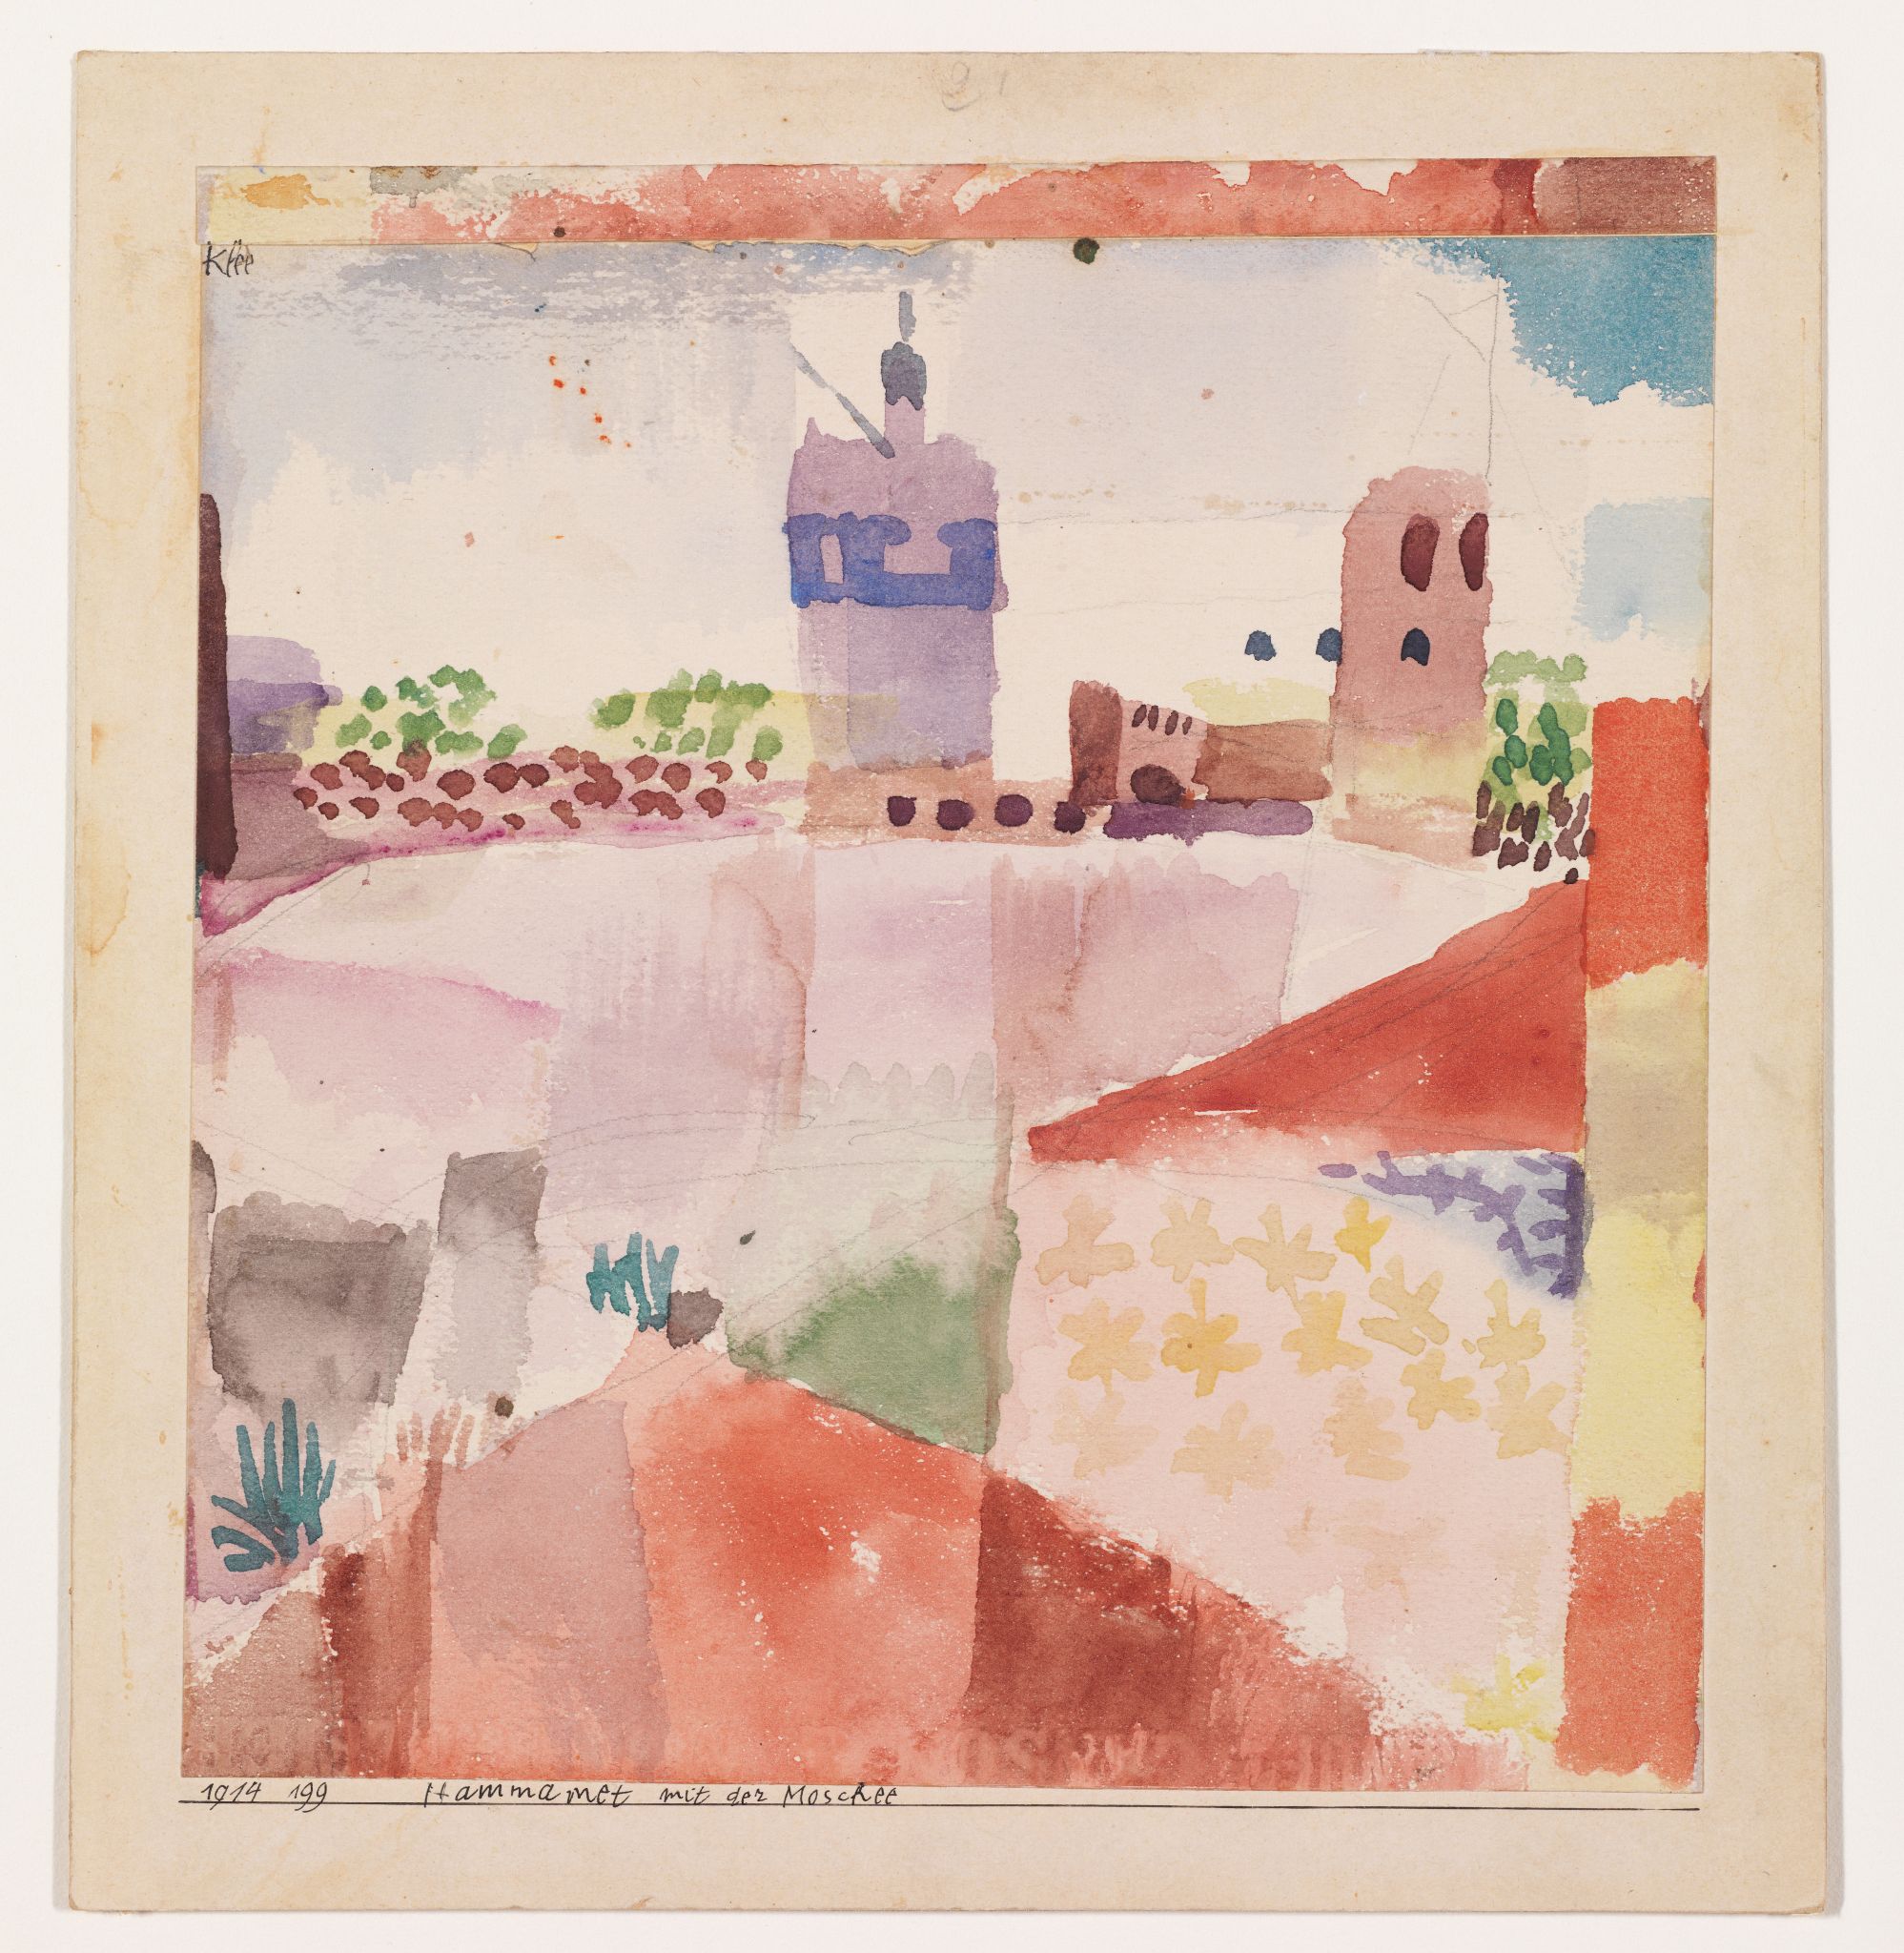 Le Hammamet avec sa mosquée de Klee (1914) est exposé au Metropolitan Museum of Art de New York (Artists Rights Society)